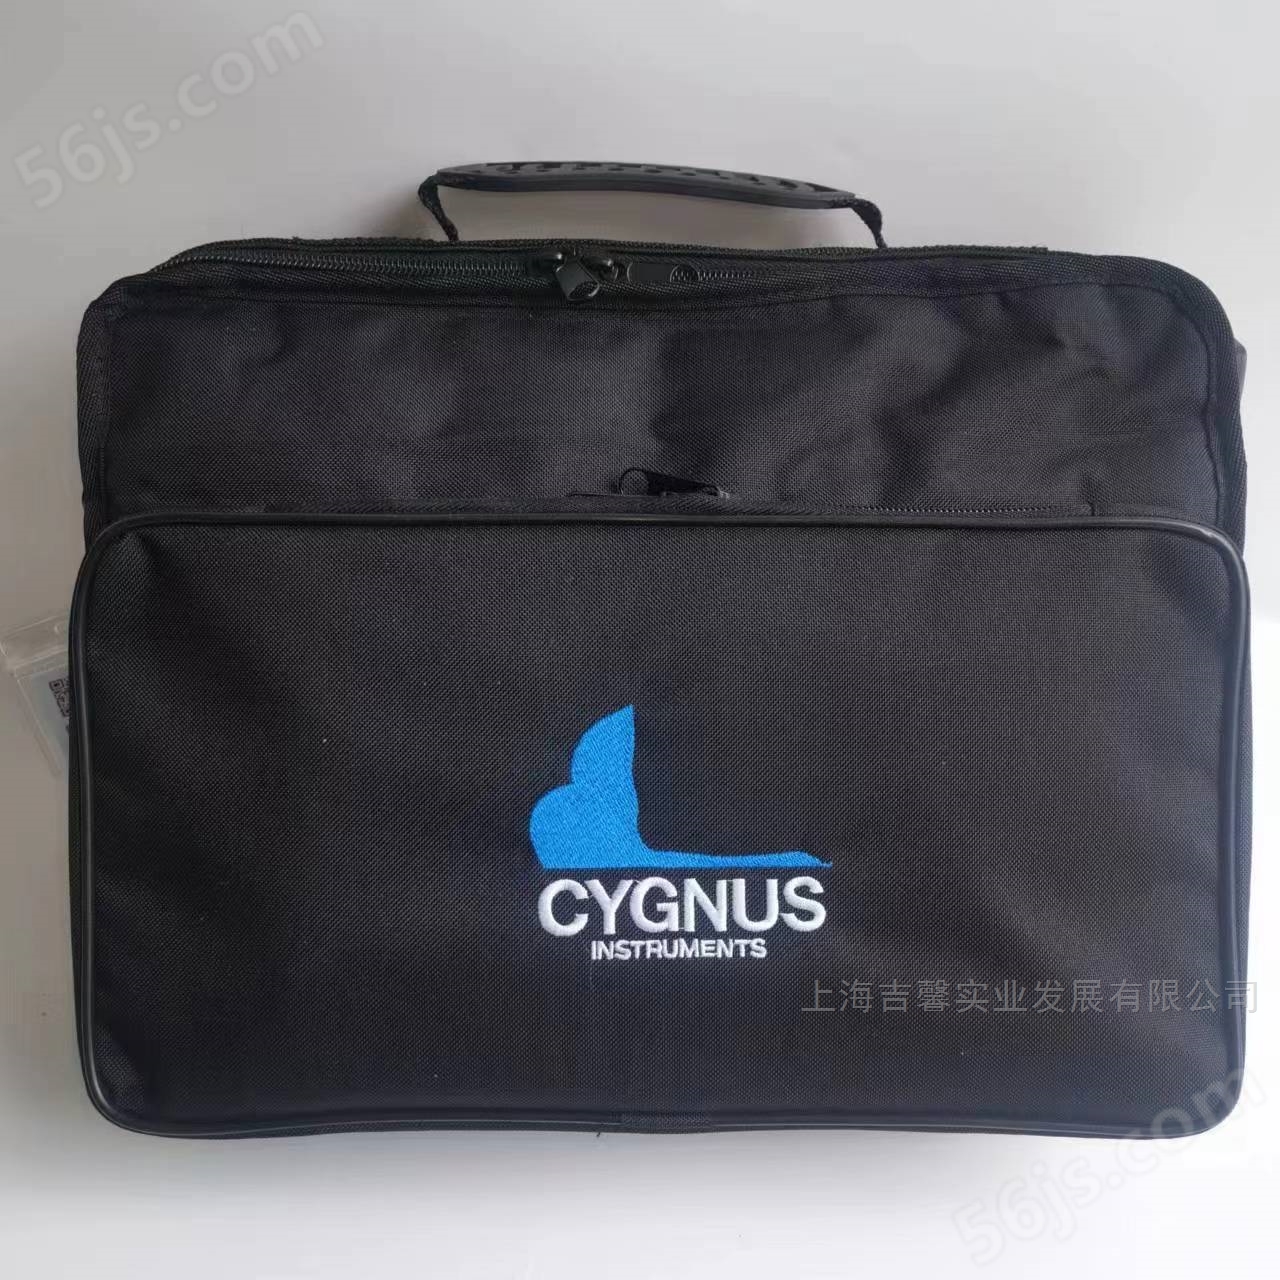  英国Cygnus 4+超声波测厚仪多少钱